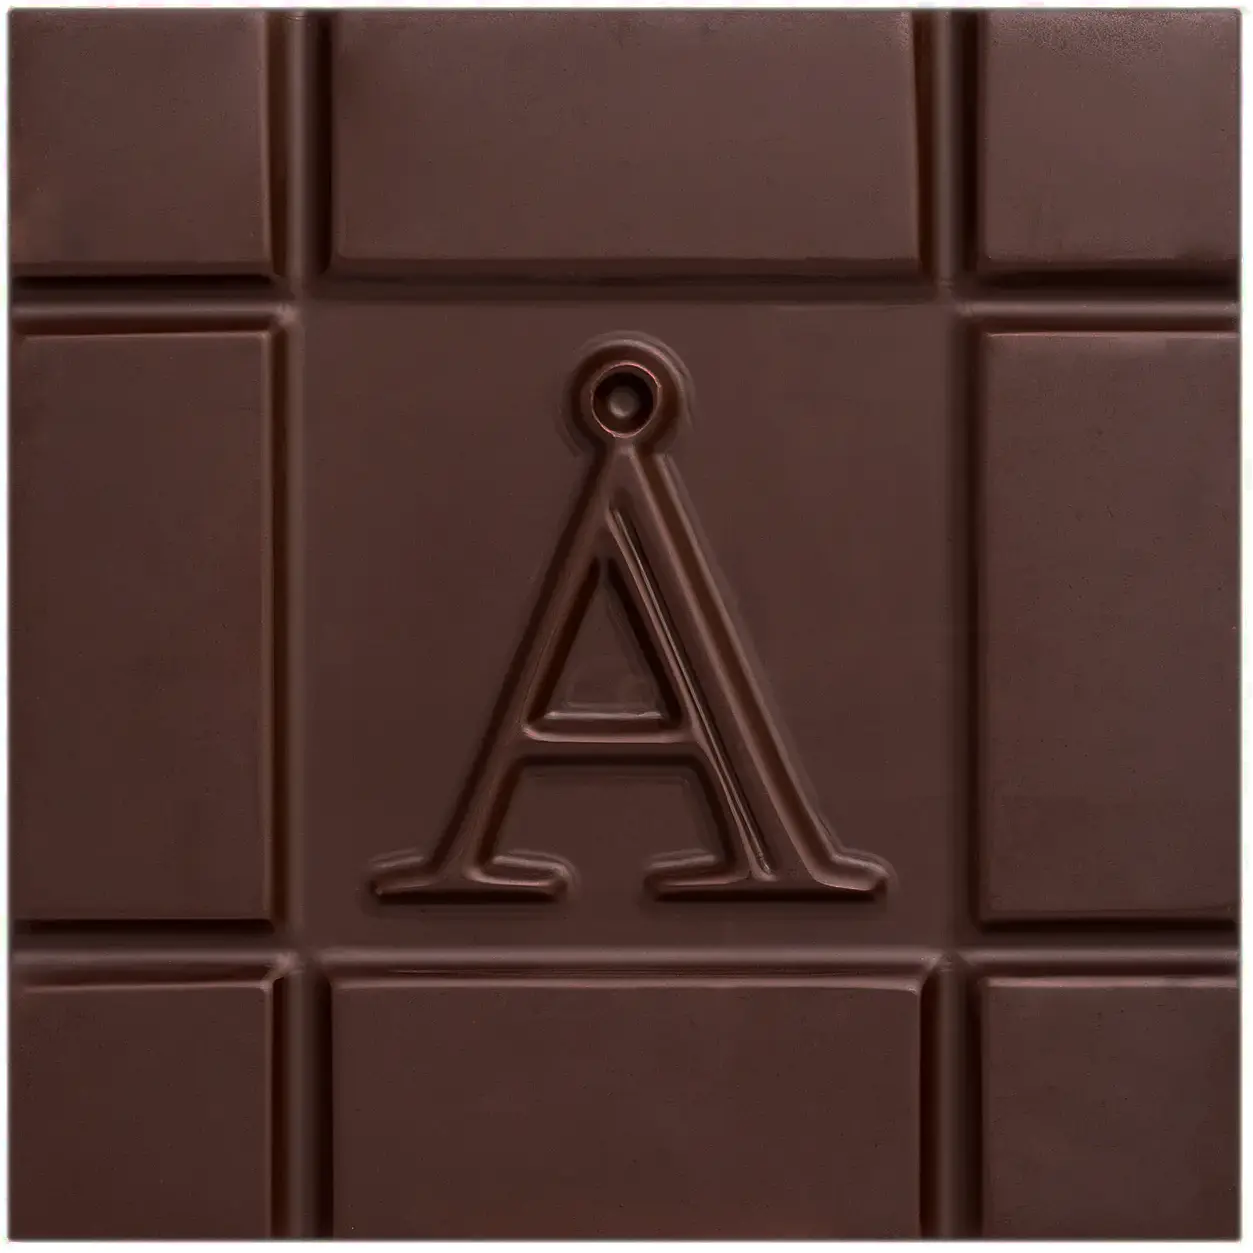 AKESSON'S Dunkle Schokoladen | Brazil »Forastero & Nibs« Kakaomasse 100% | BIO | 60g